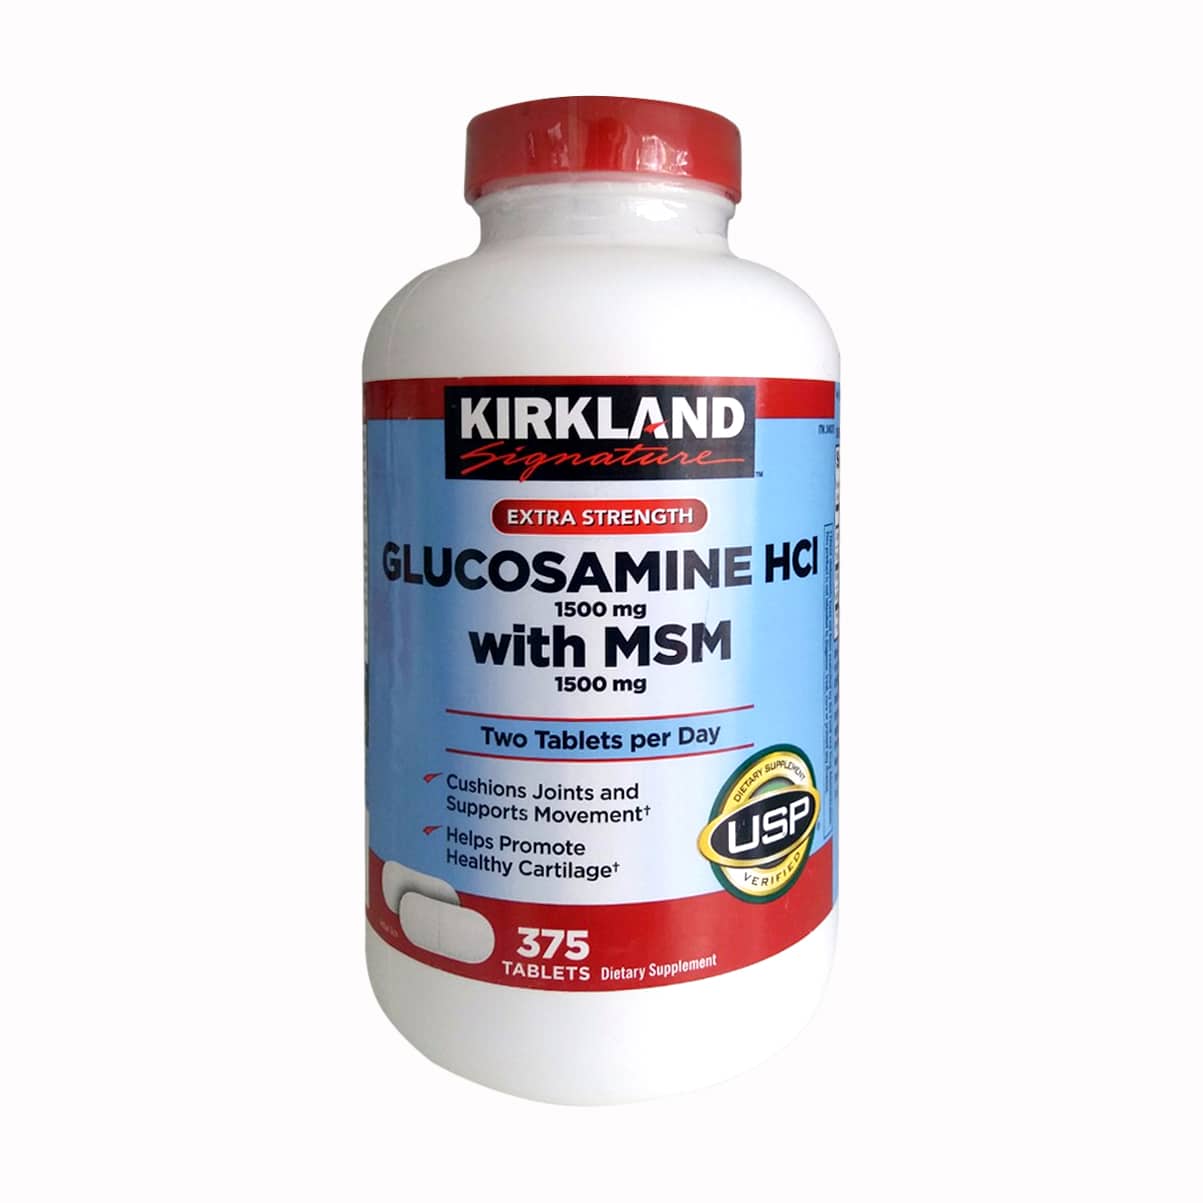 Toàn quốc - Viên Uống Glucosamine HCL 1500mg With MSM 1500mg 375 Viên Của Mỹ 55-p-1517539692621